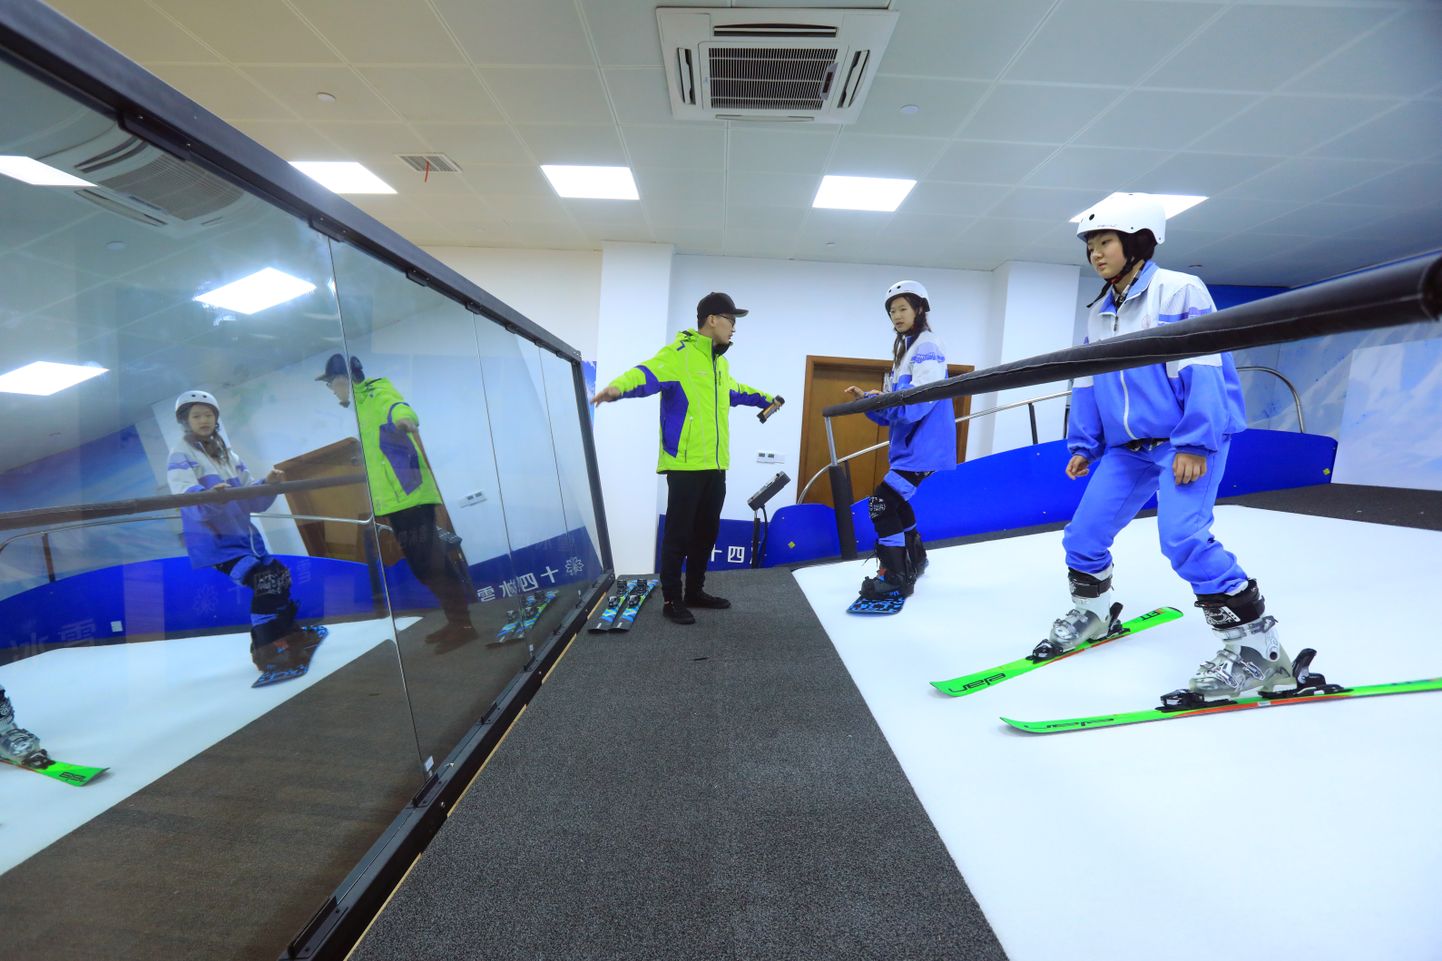 Õpilased harjutamas siseruumis simulaatoril suusatamist Hangzhou Shi
linnas Hiinas.